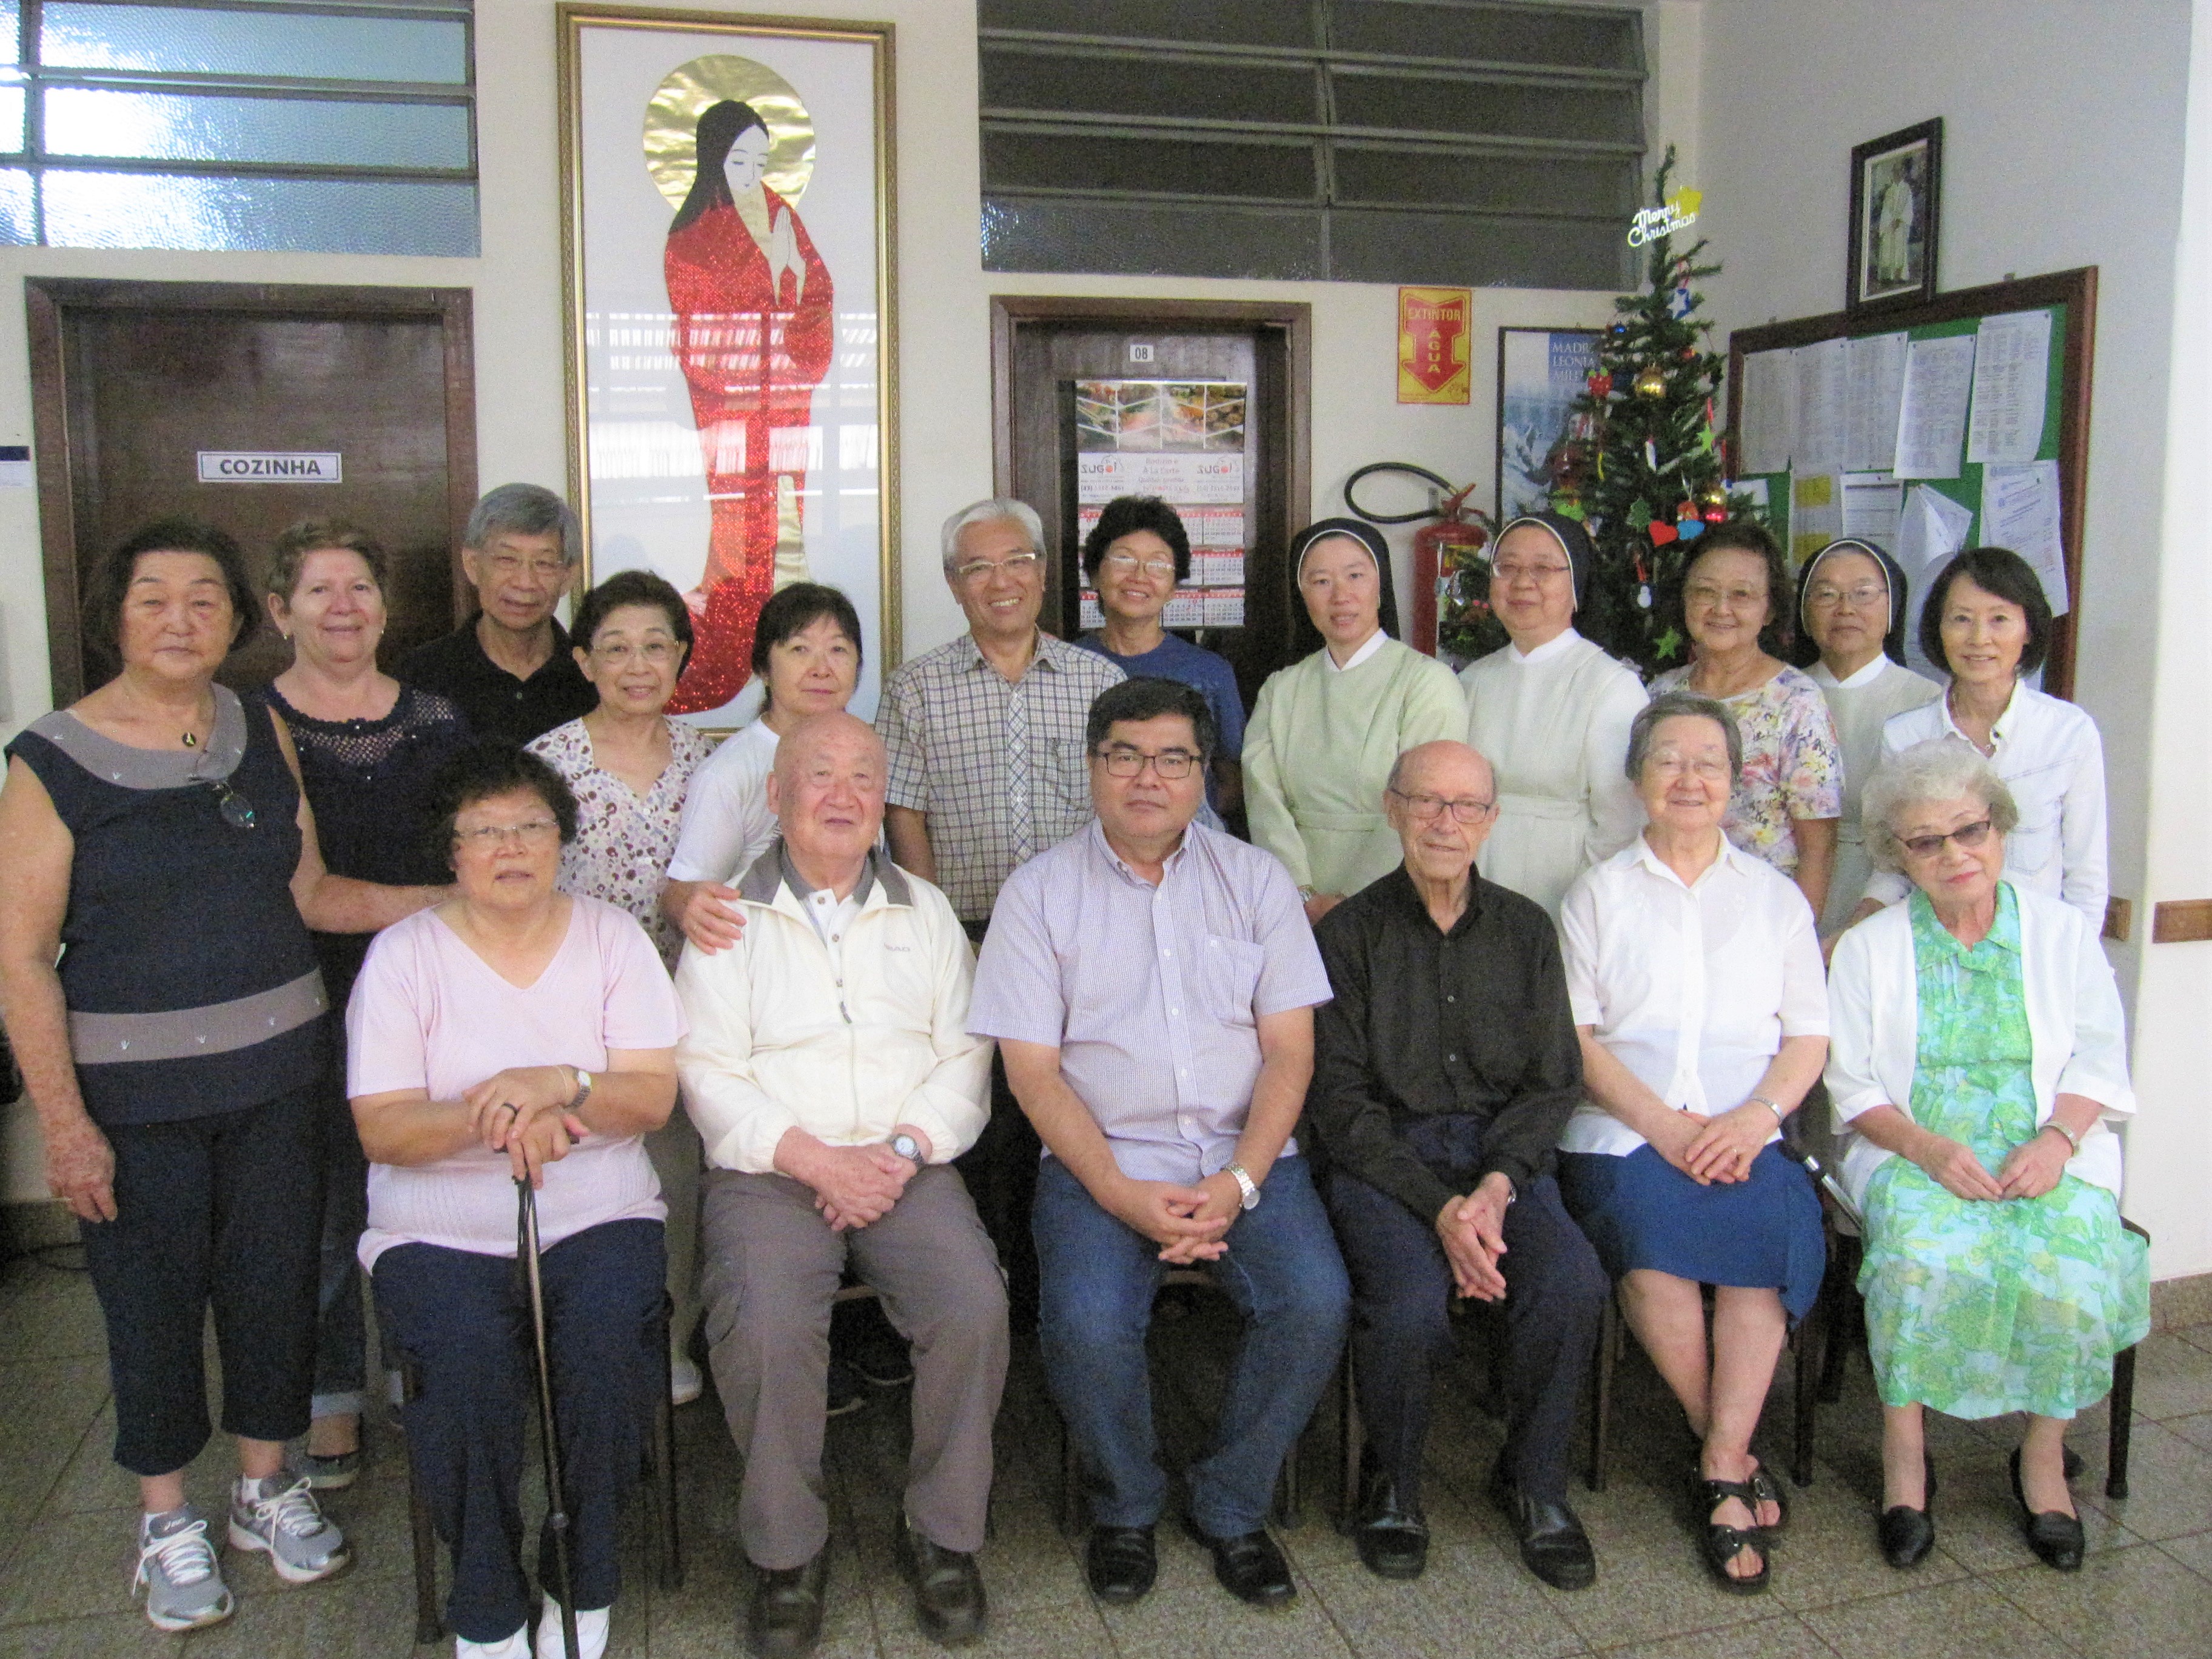 ANO 2019: Encontro Regional de Missionários no PARANÁ